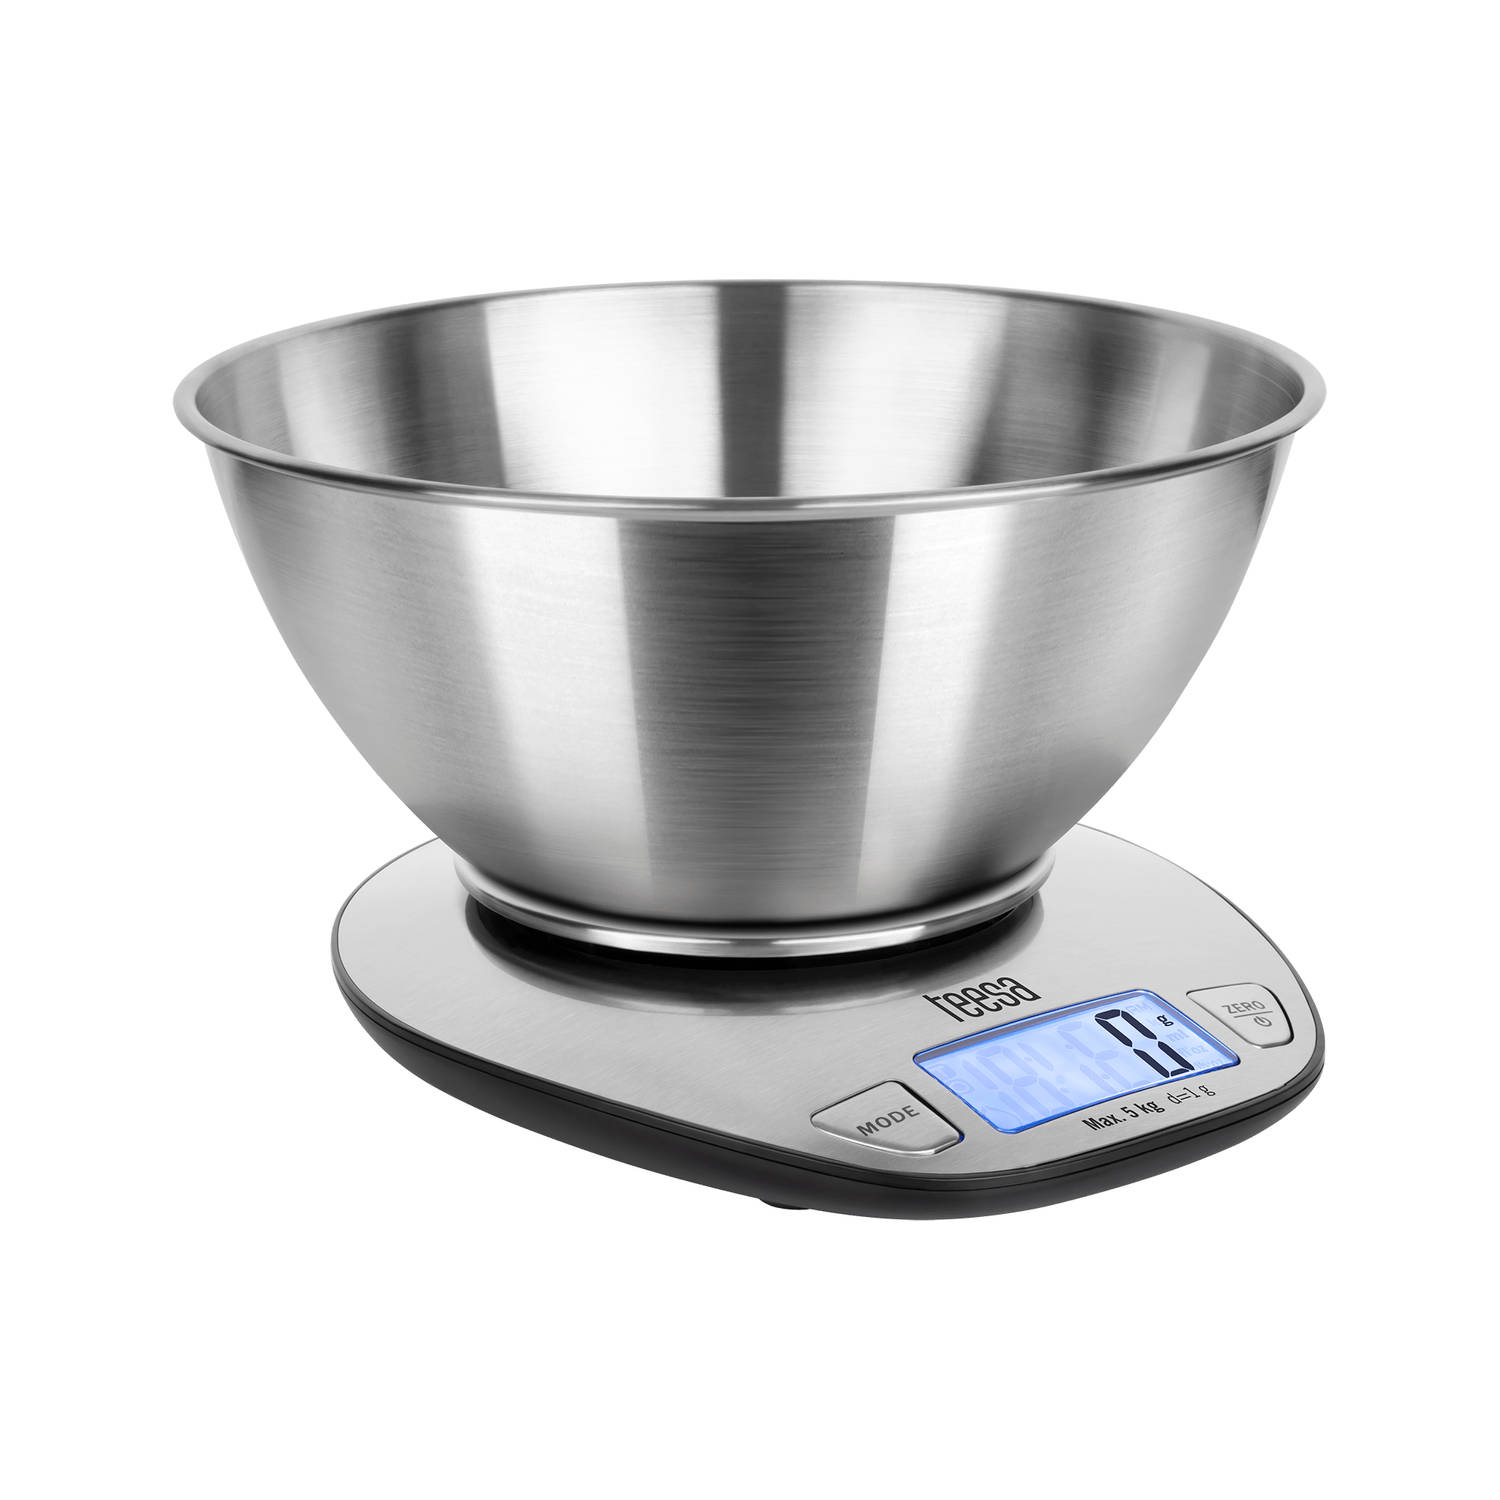 Teesa digitale keukenweegschaal met kom tot 5 kg TSA0812